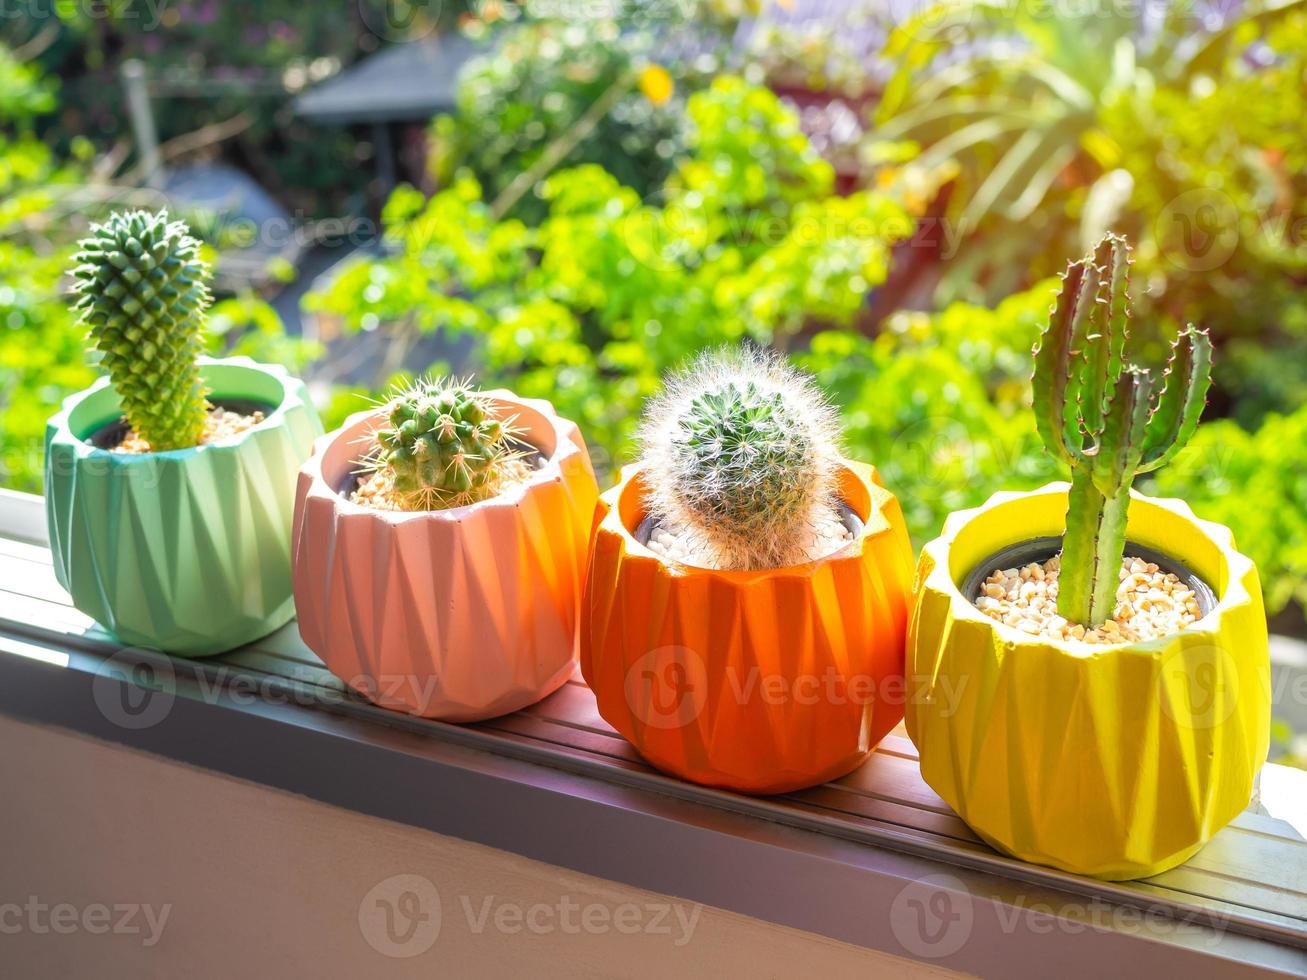 jardinières en béton géométriques peintes colorées avec plante de cactus. pots en béton peints pour la décoration de la maison photo